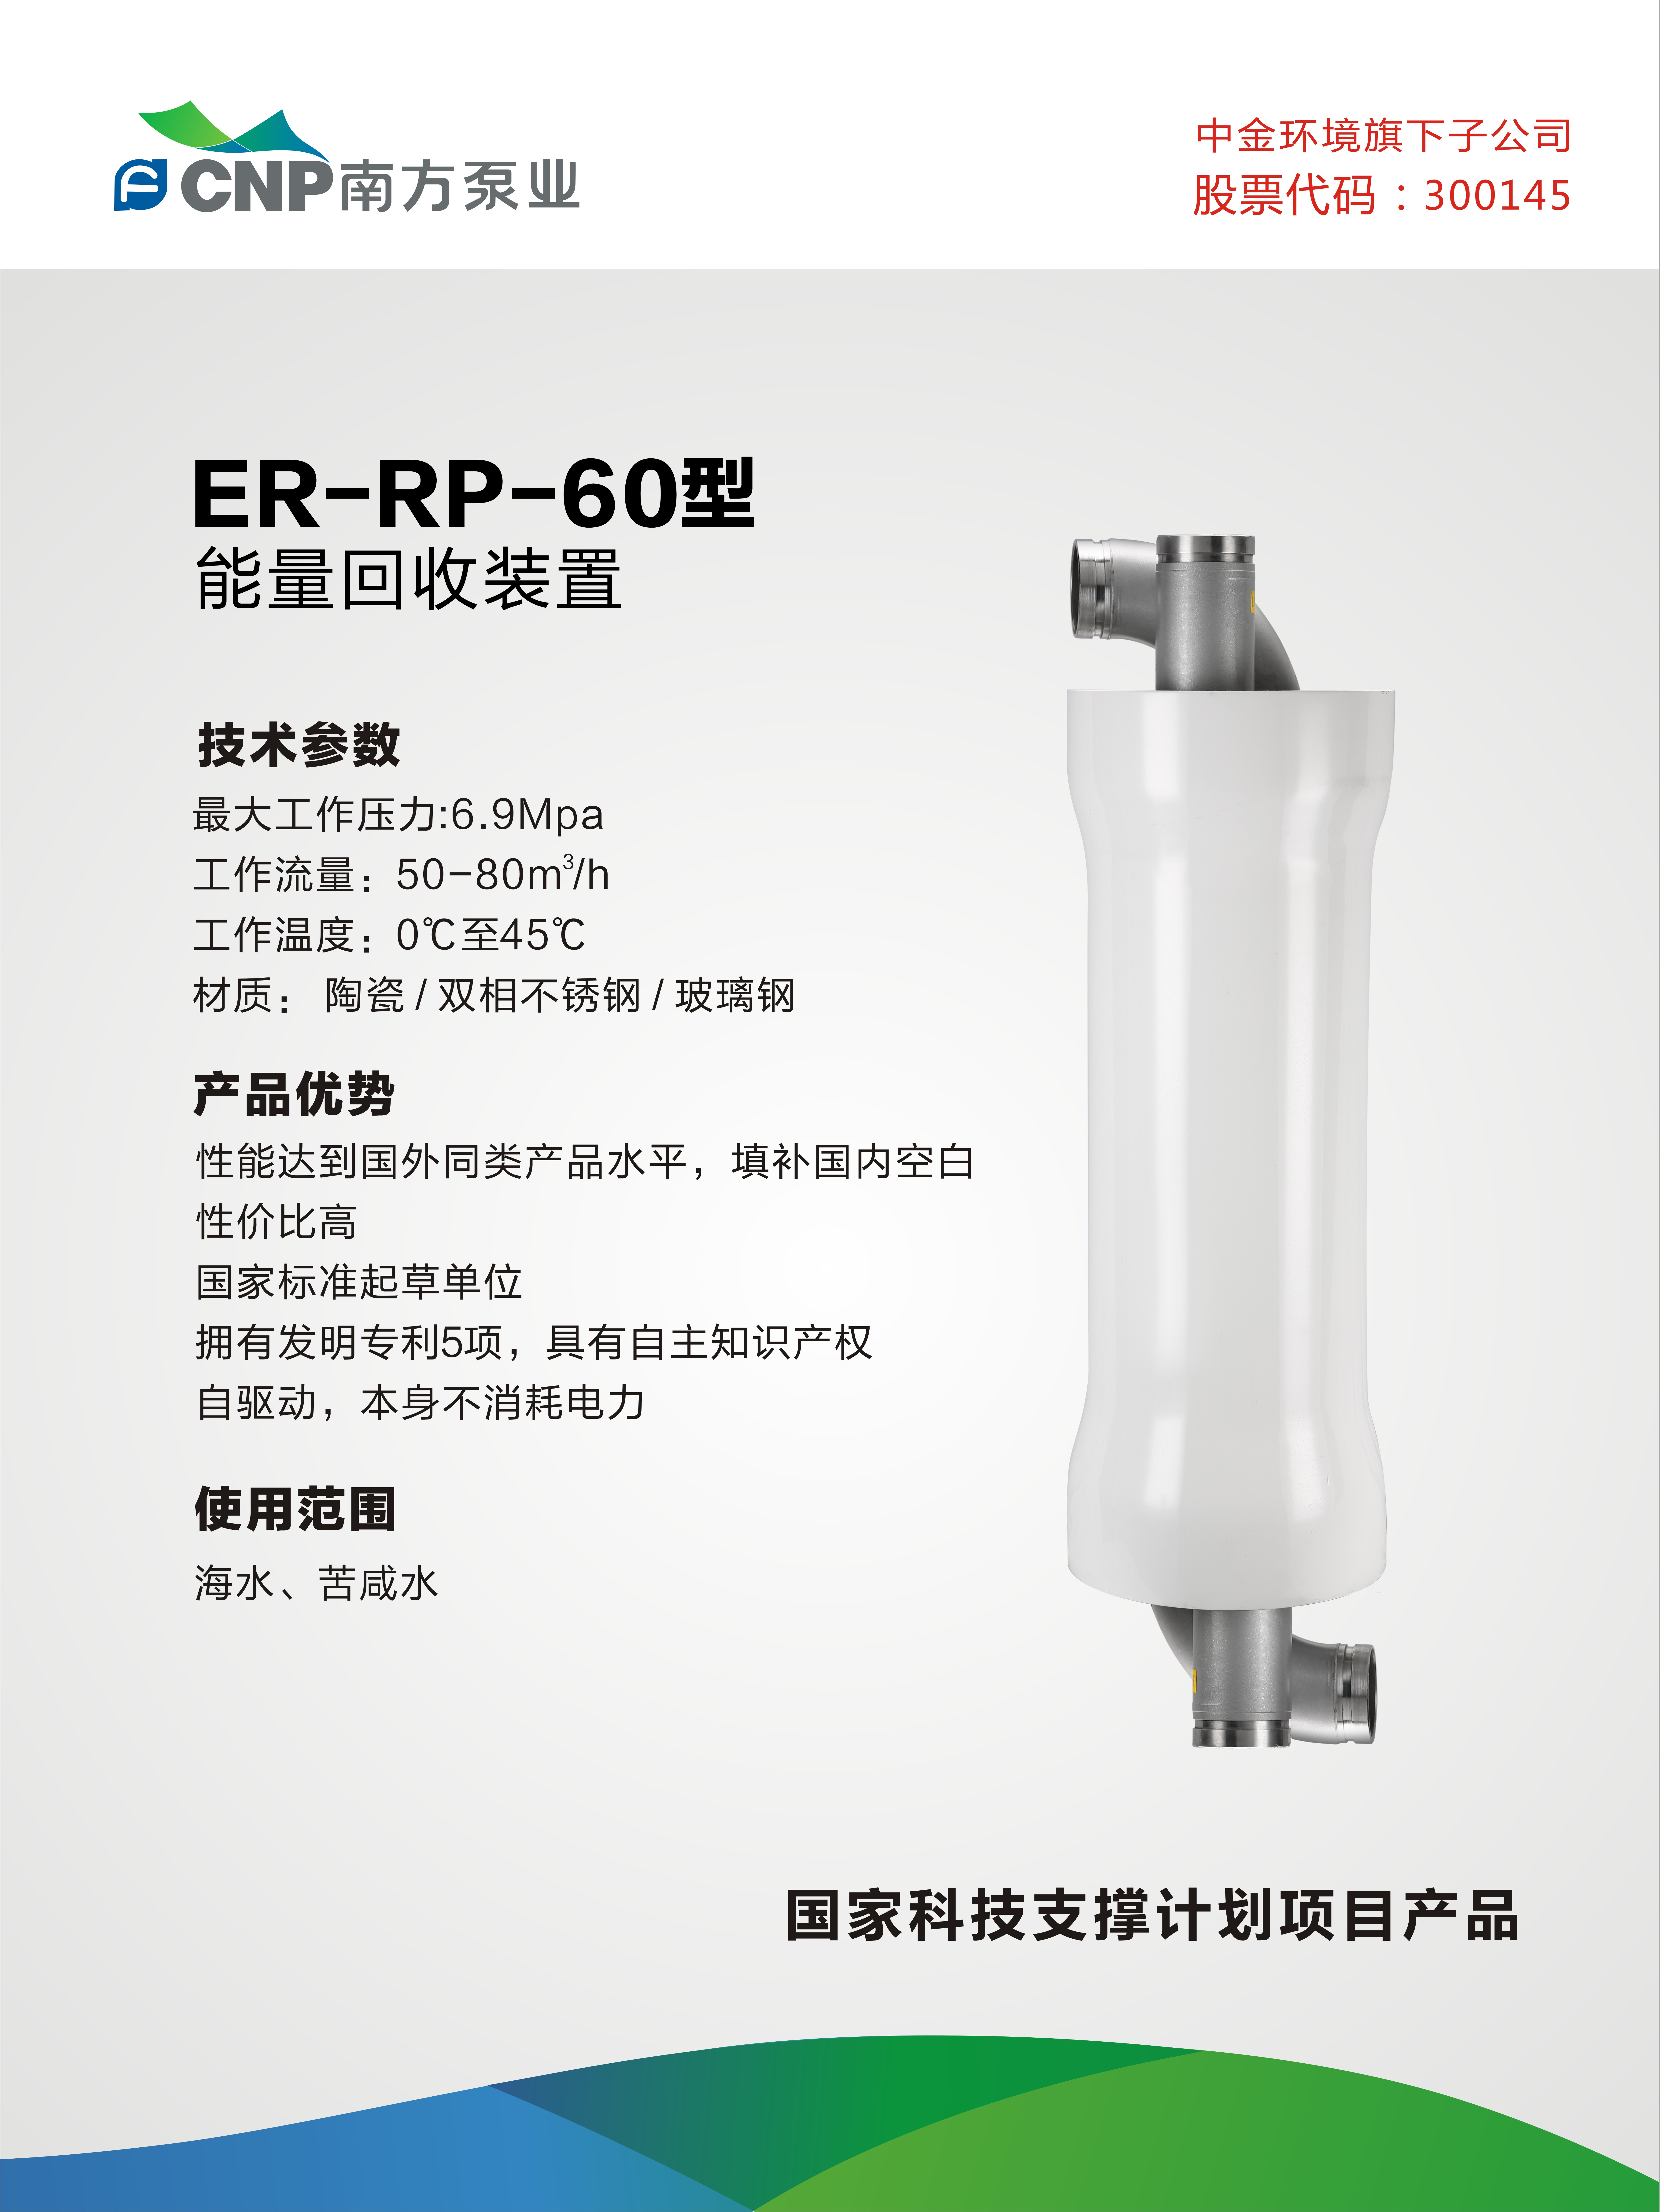 能量回收装置 - ER- PR-60型